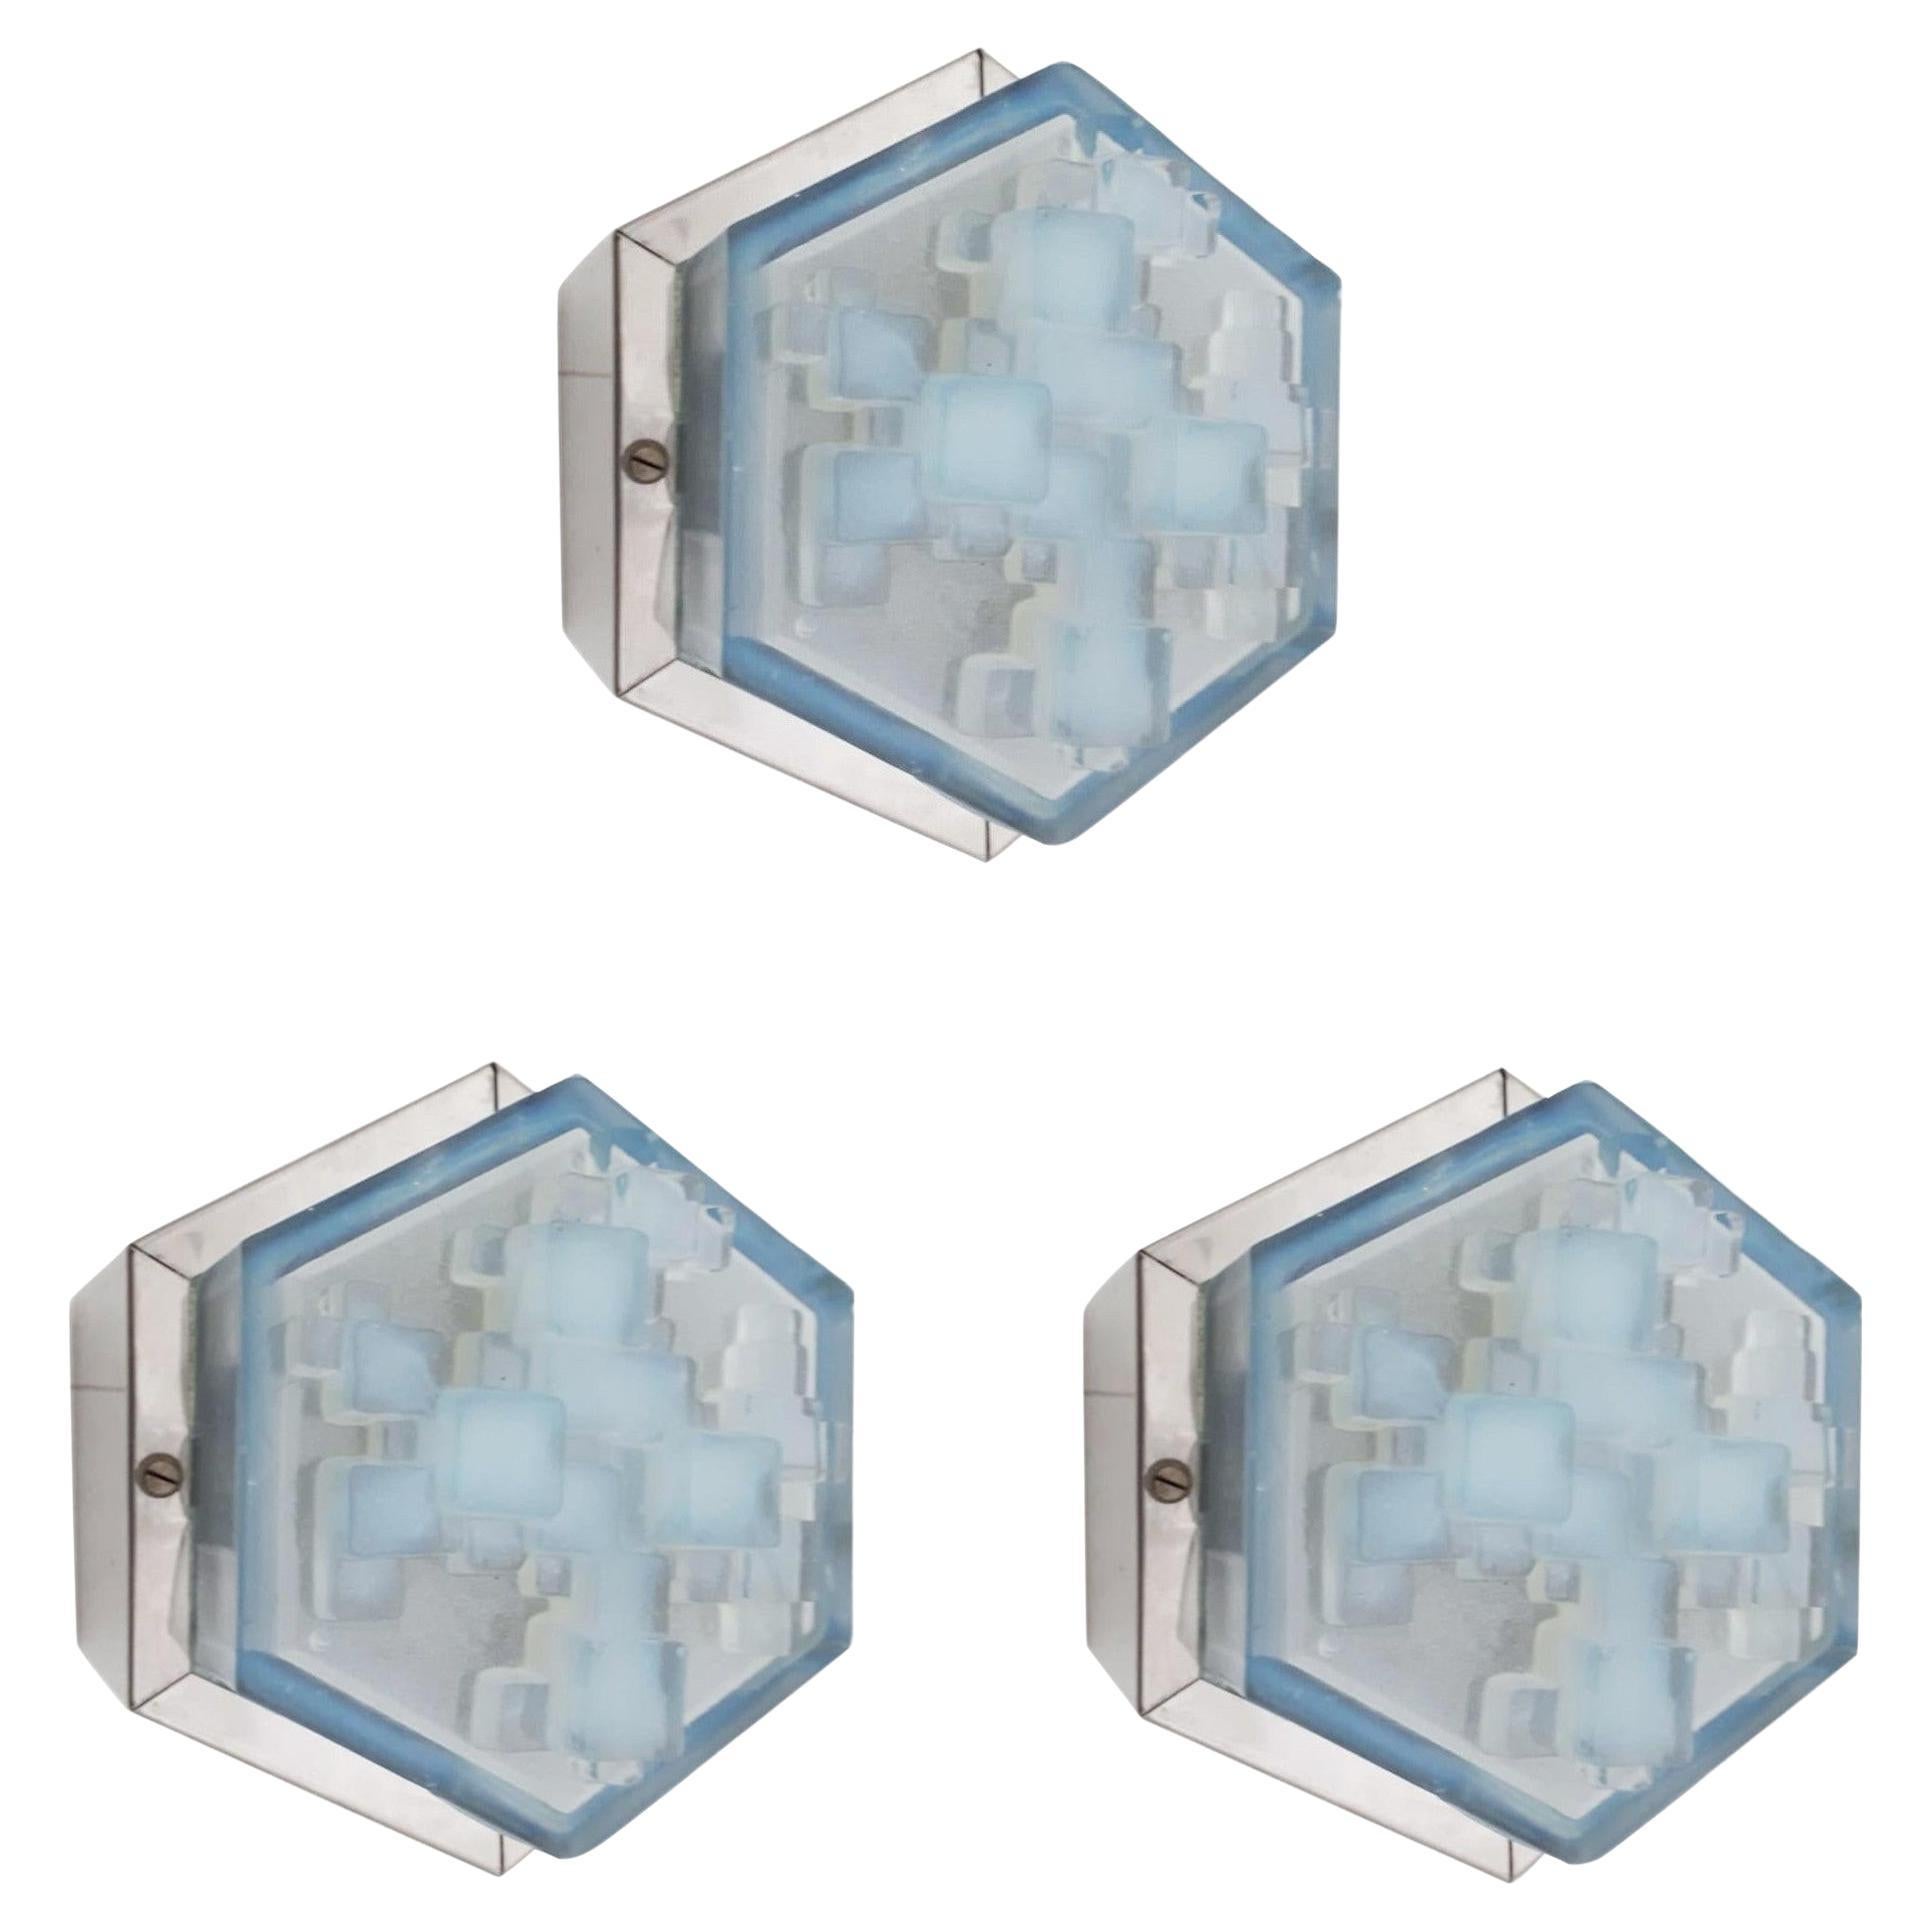 Appliques modulaires hexagonales / encastrées Poliarte - 3 disponibles